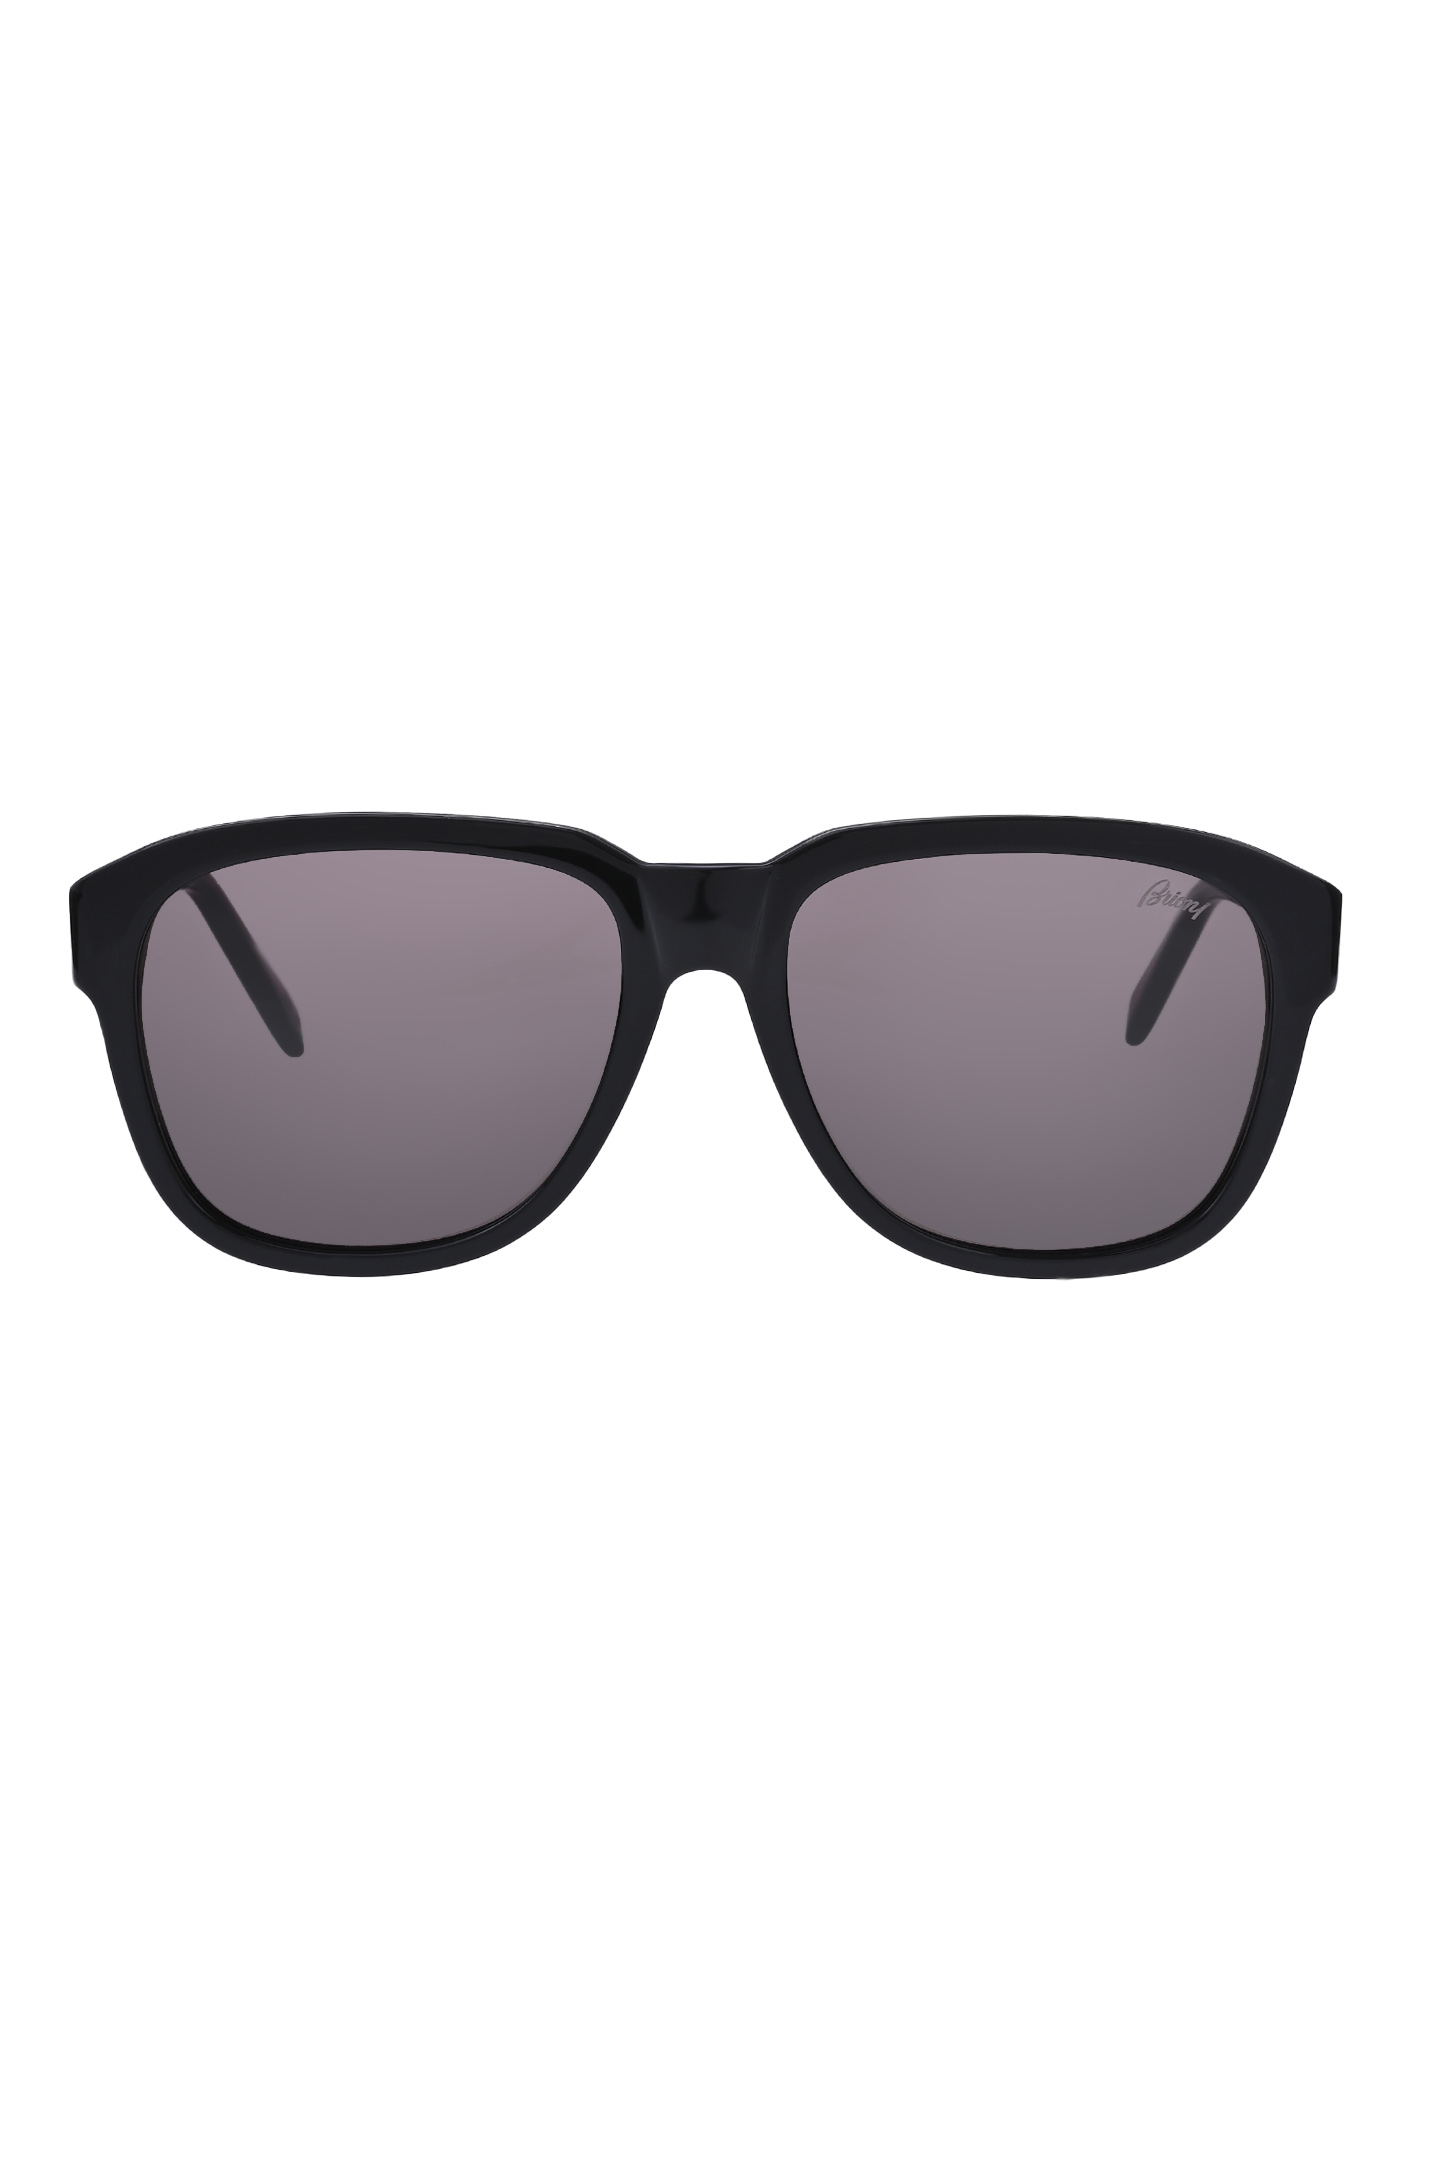 Солнцезащитные очки BRIONI ODE300 P3ZAC, цвет: Черный, Мужской